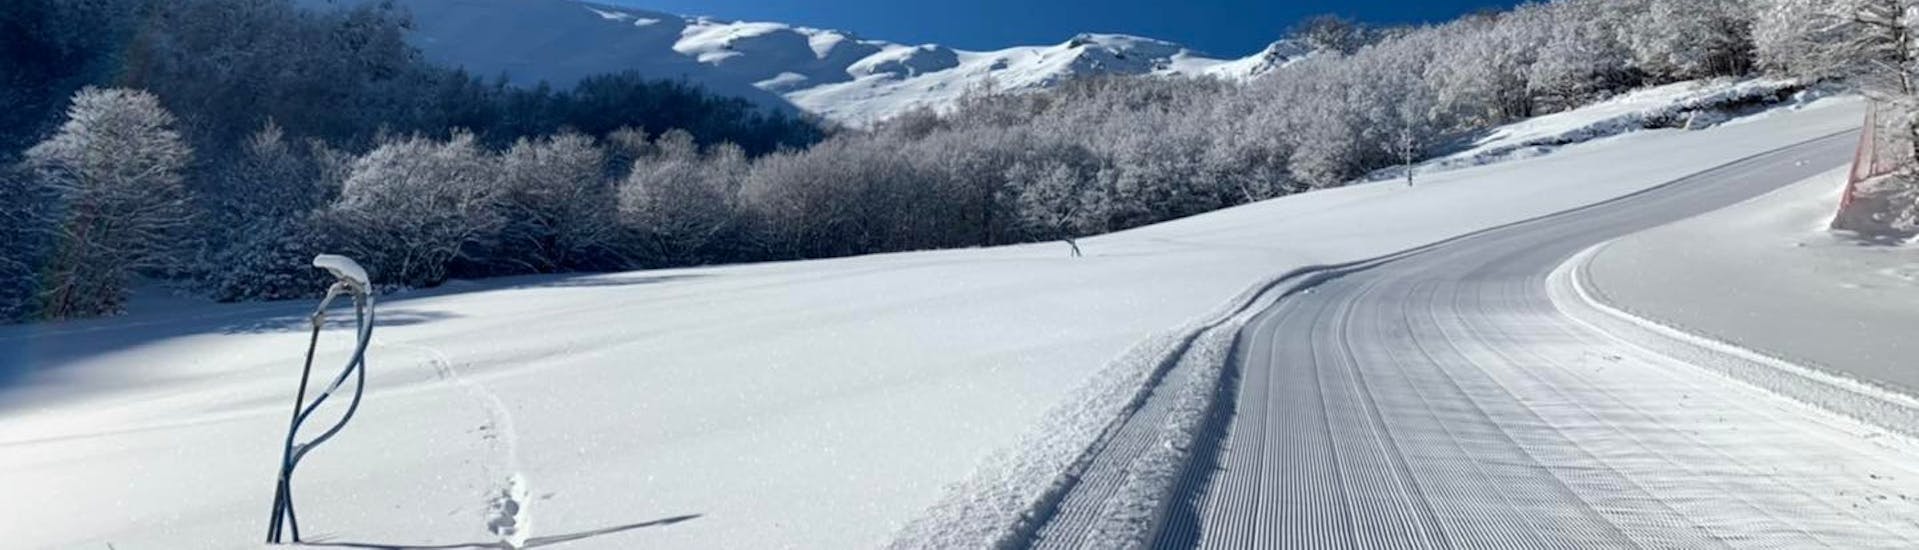 Incredibili piste a Campo Felice, luogo perfetto per una delle lezioni private di sci per bambini.